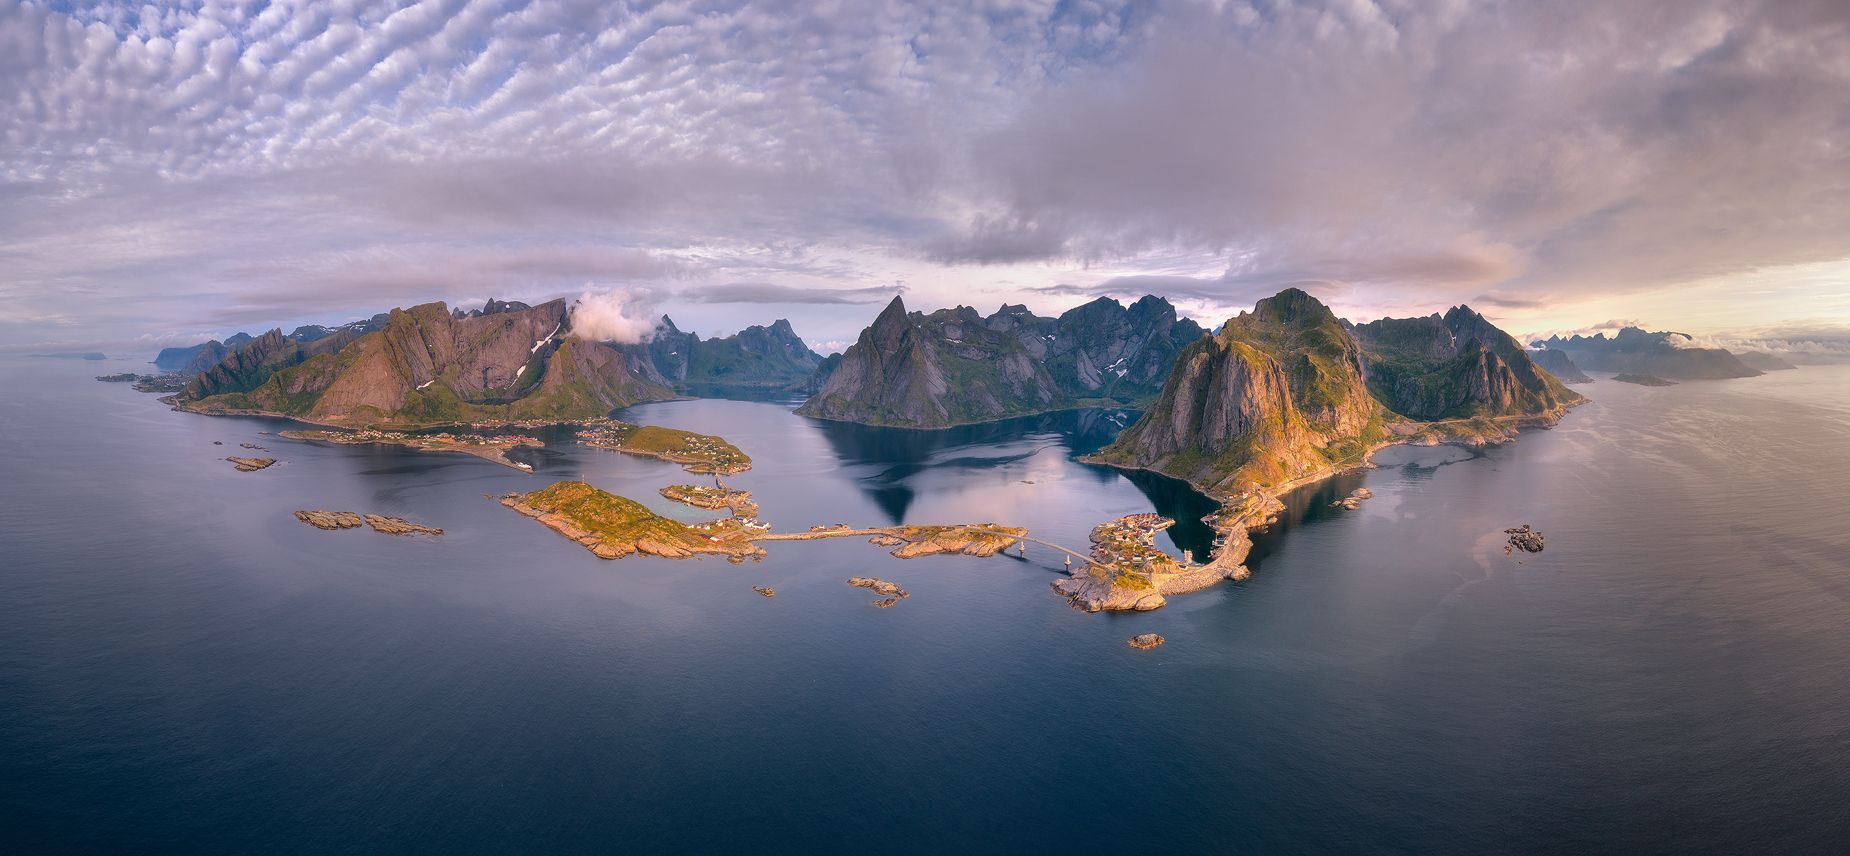 панорама, норвегия, лофотены, лето, утро, остров, moskenesøya, Евгений Матюшенков